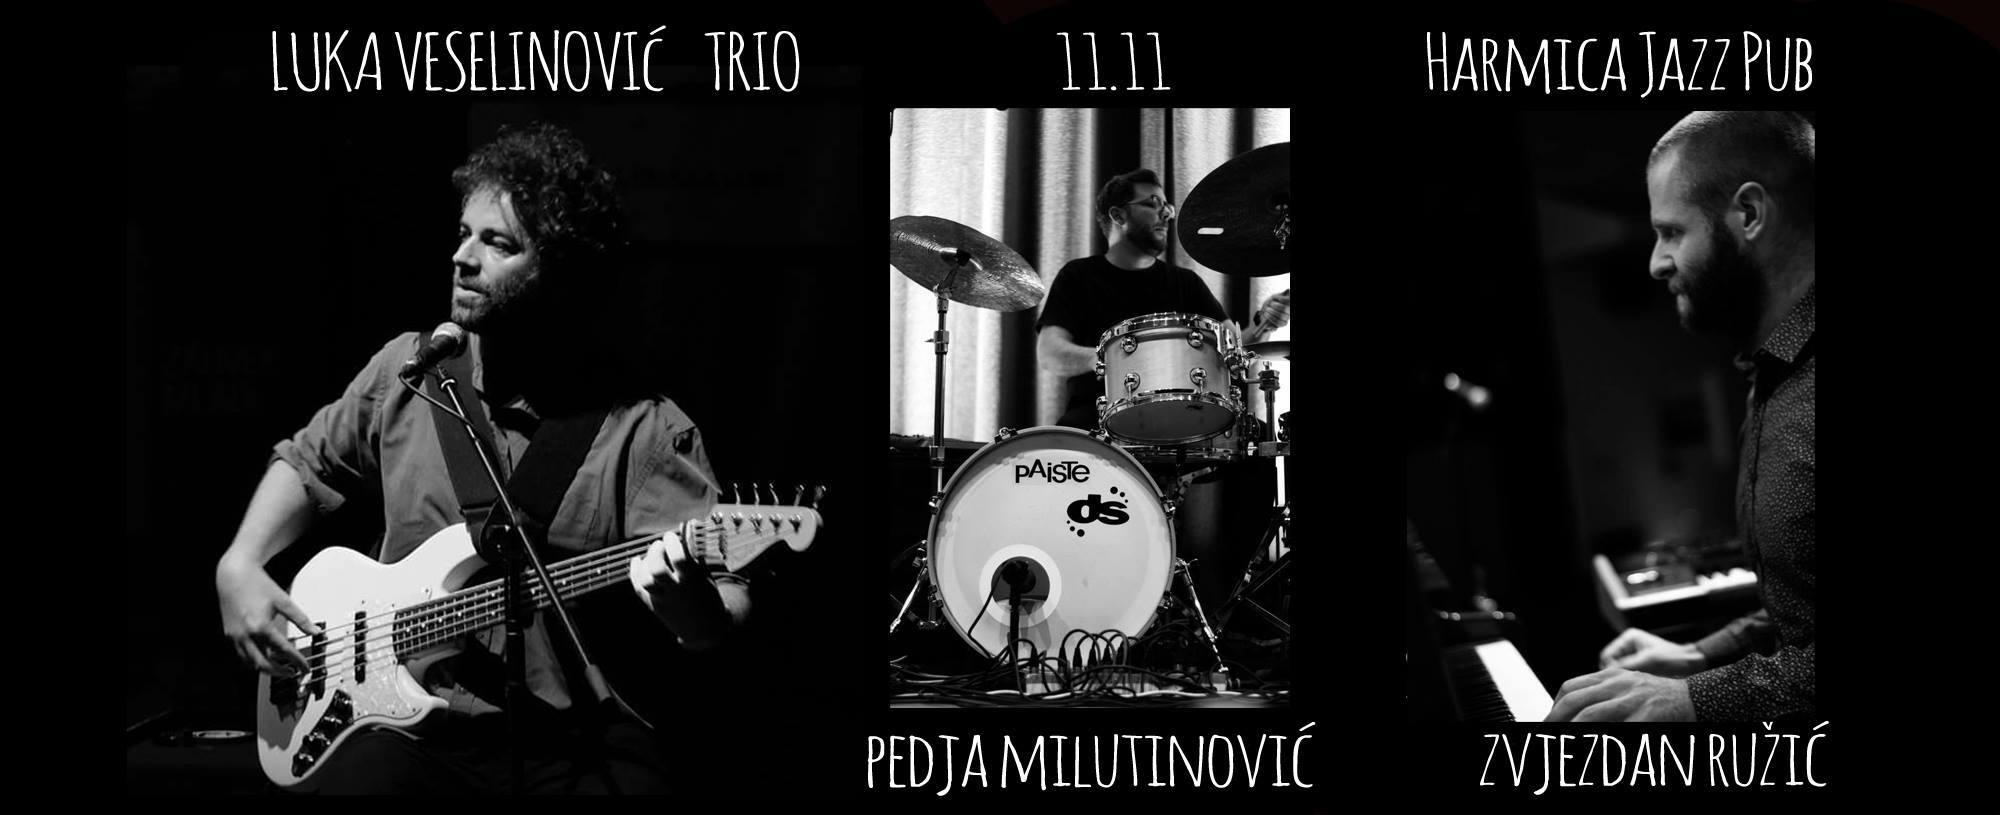 Luka Veselinović trio 11.11.2017. Harmica Jazz Pub